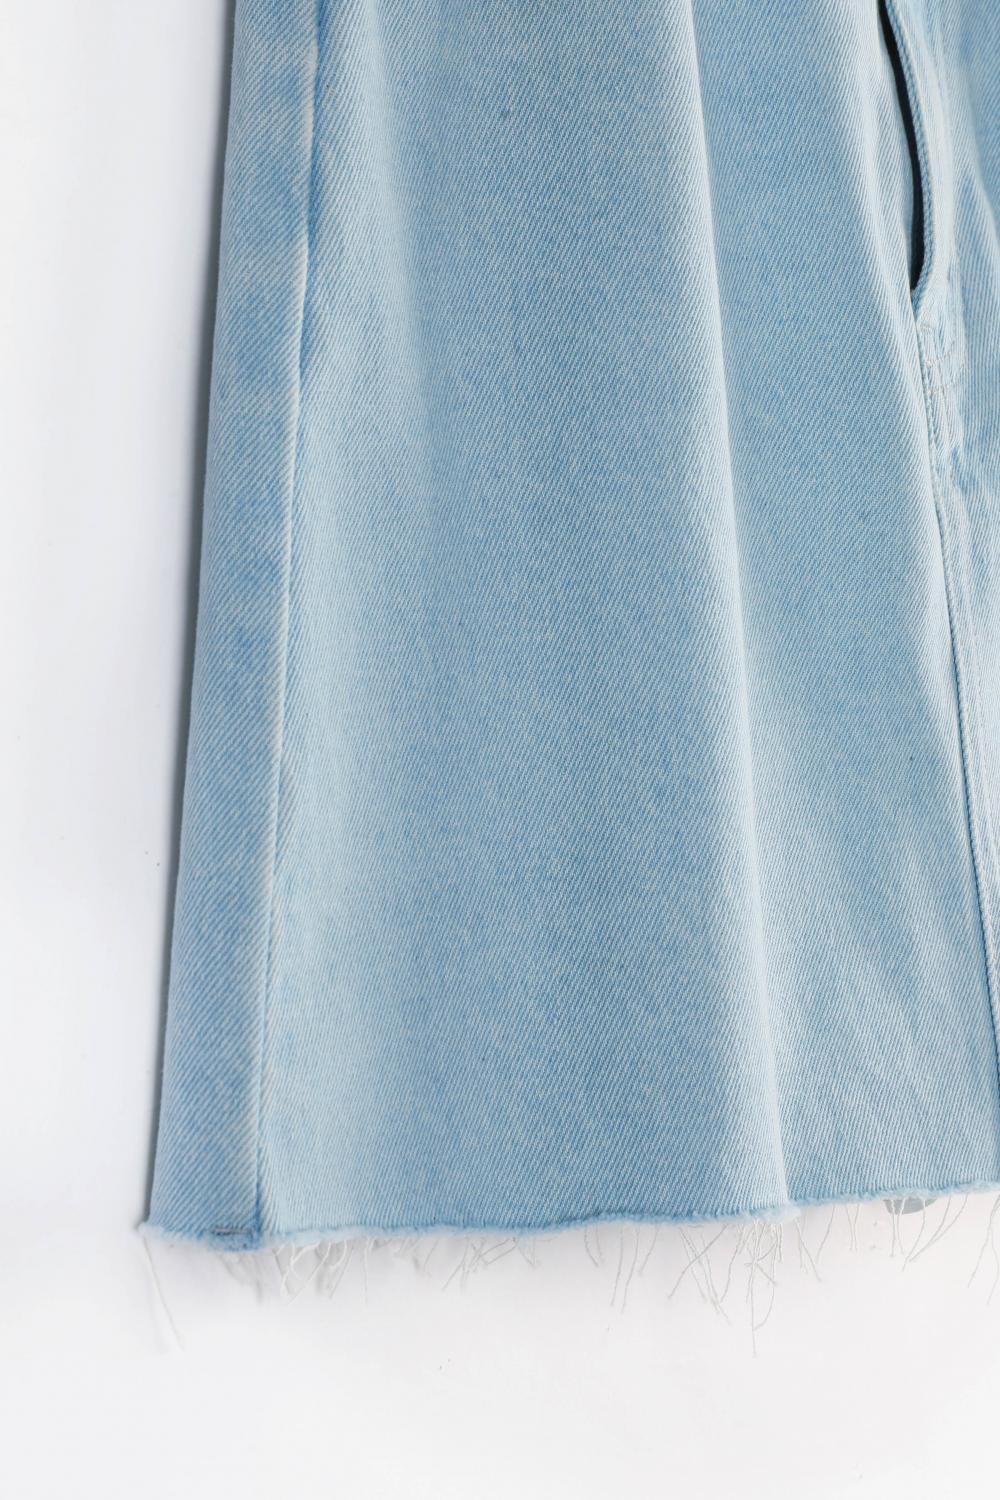 Vintage Denim Lace Short Skirt